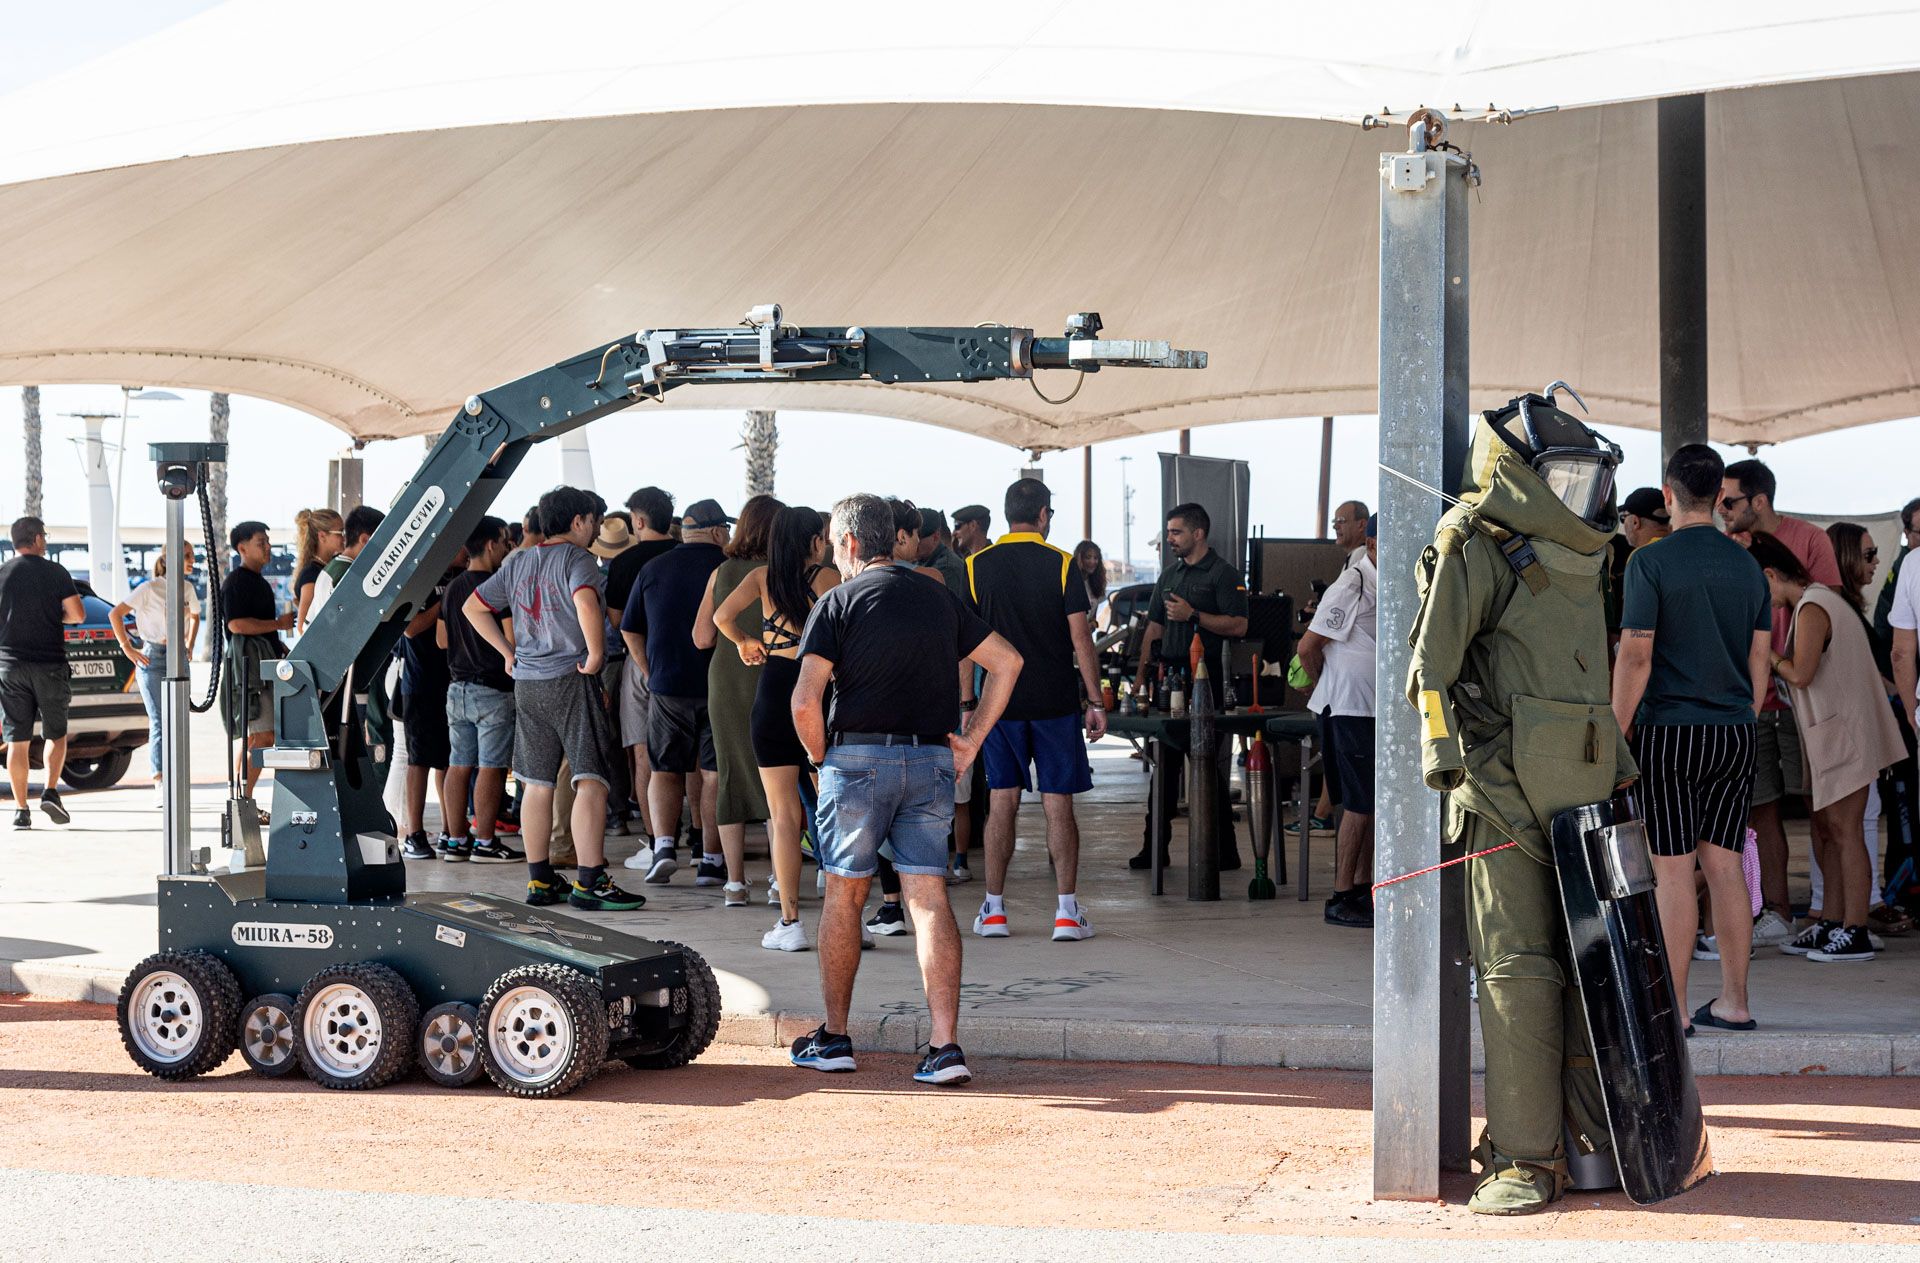 Jornada de puertas abiertas de la guardia Civil en Alicante